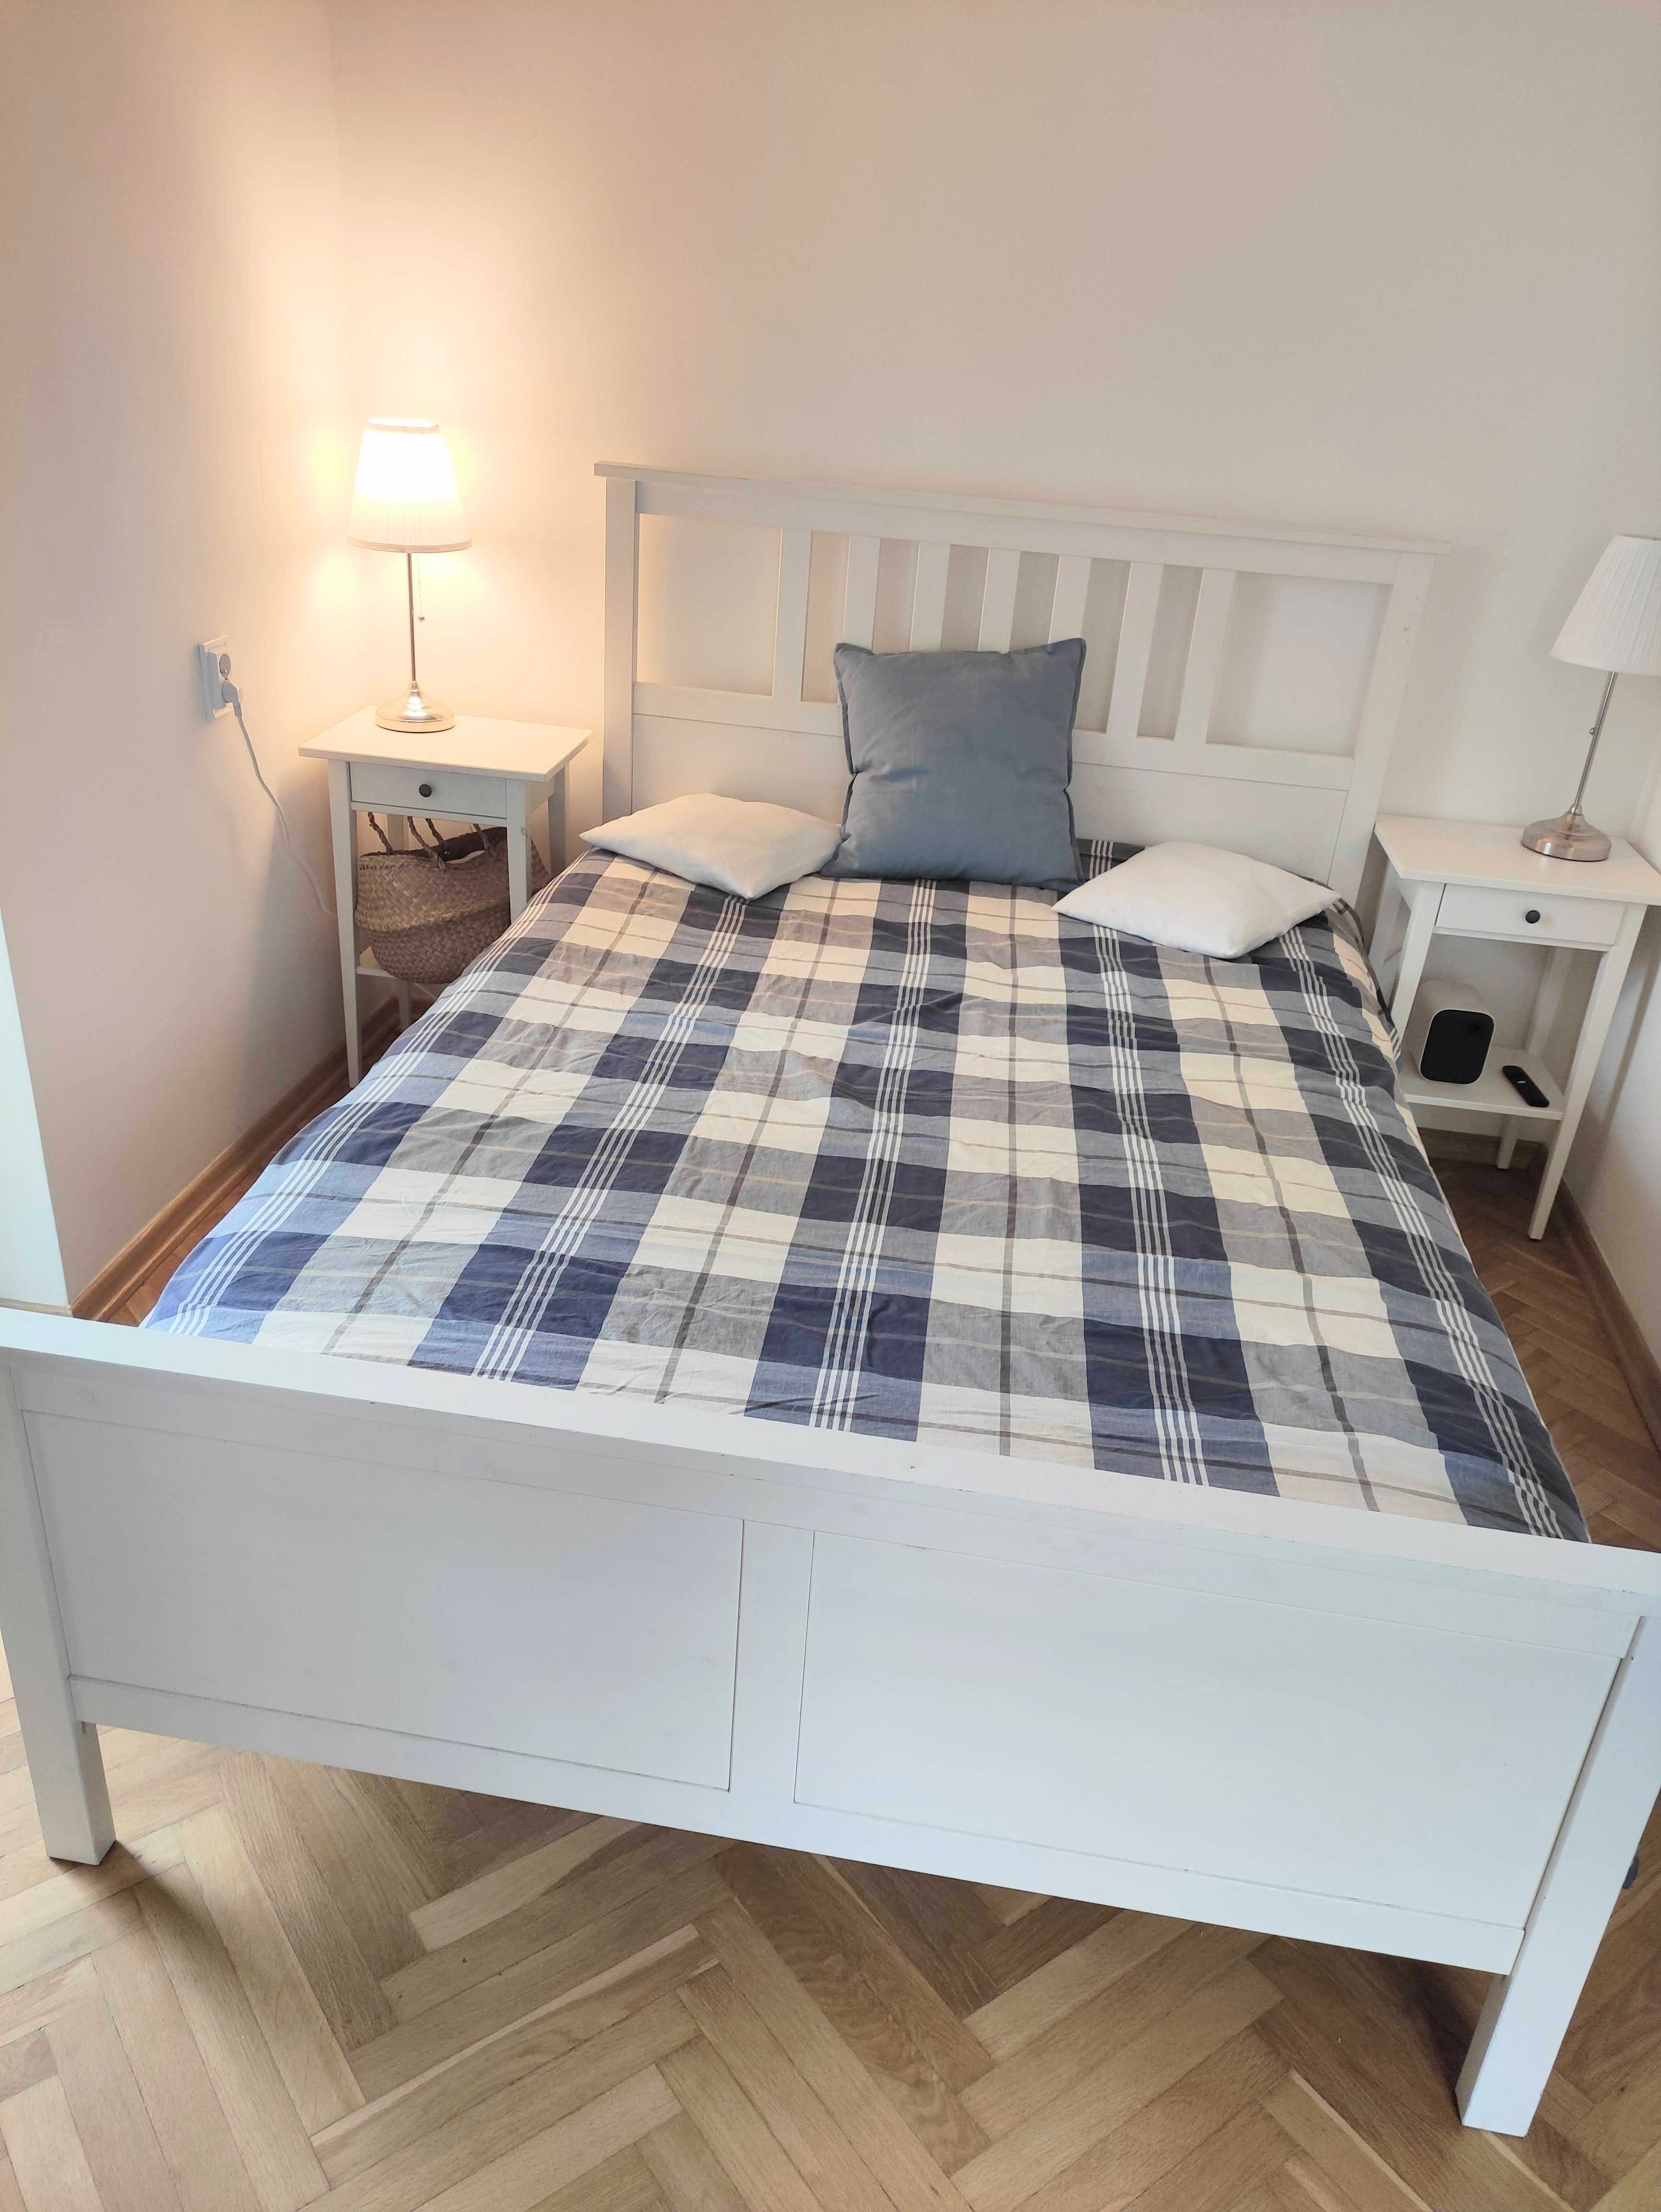 Ikea hemnes łóżko drewniane ze stelażem białe 140 x 200 Łódź Górna